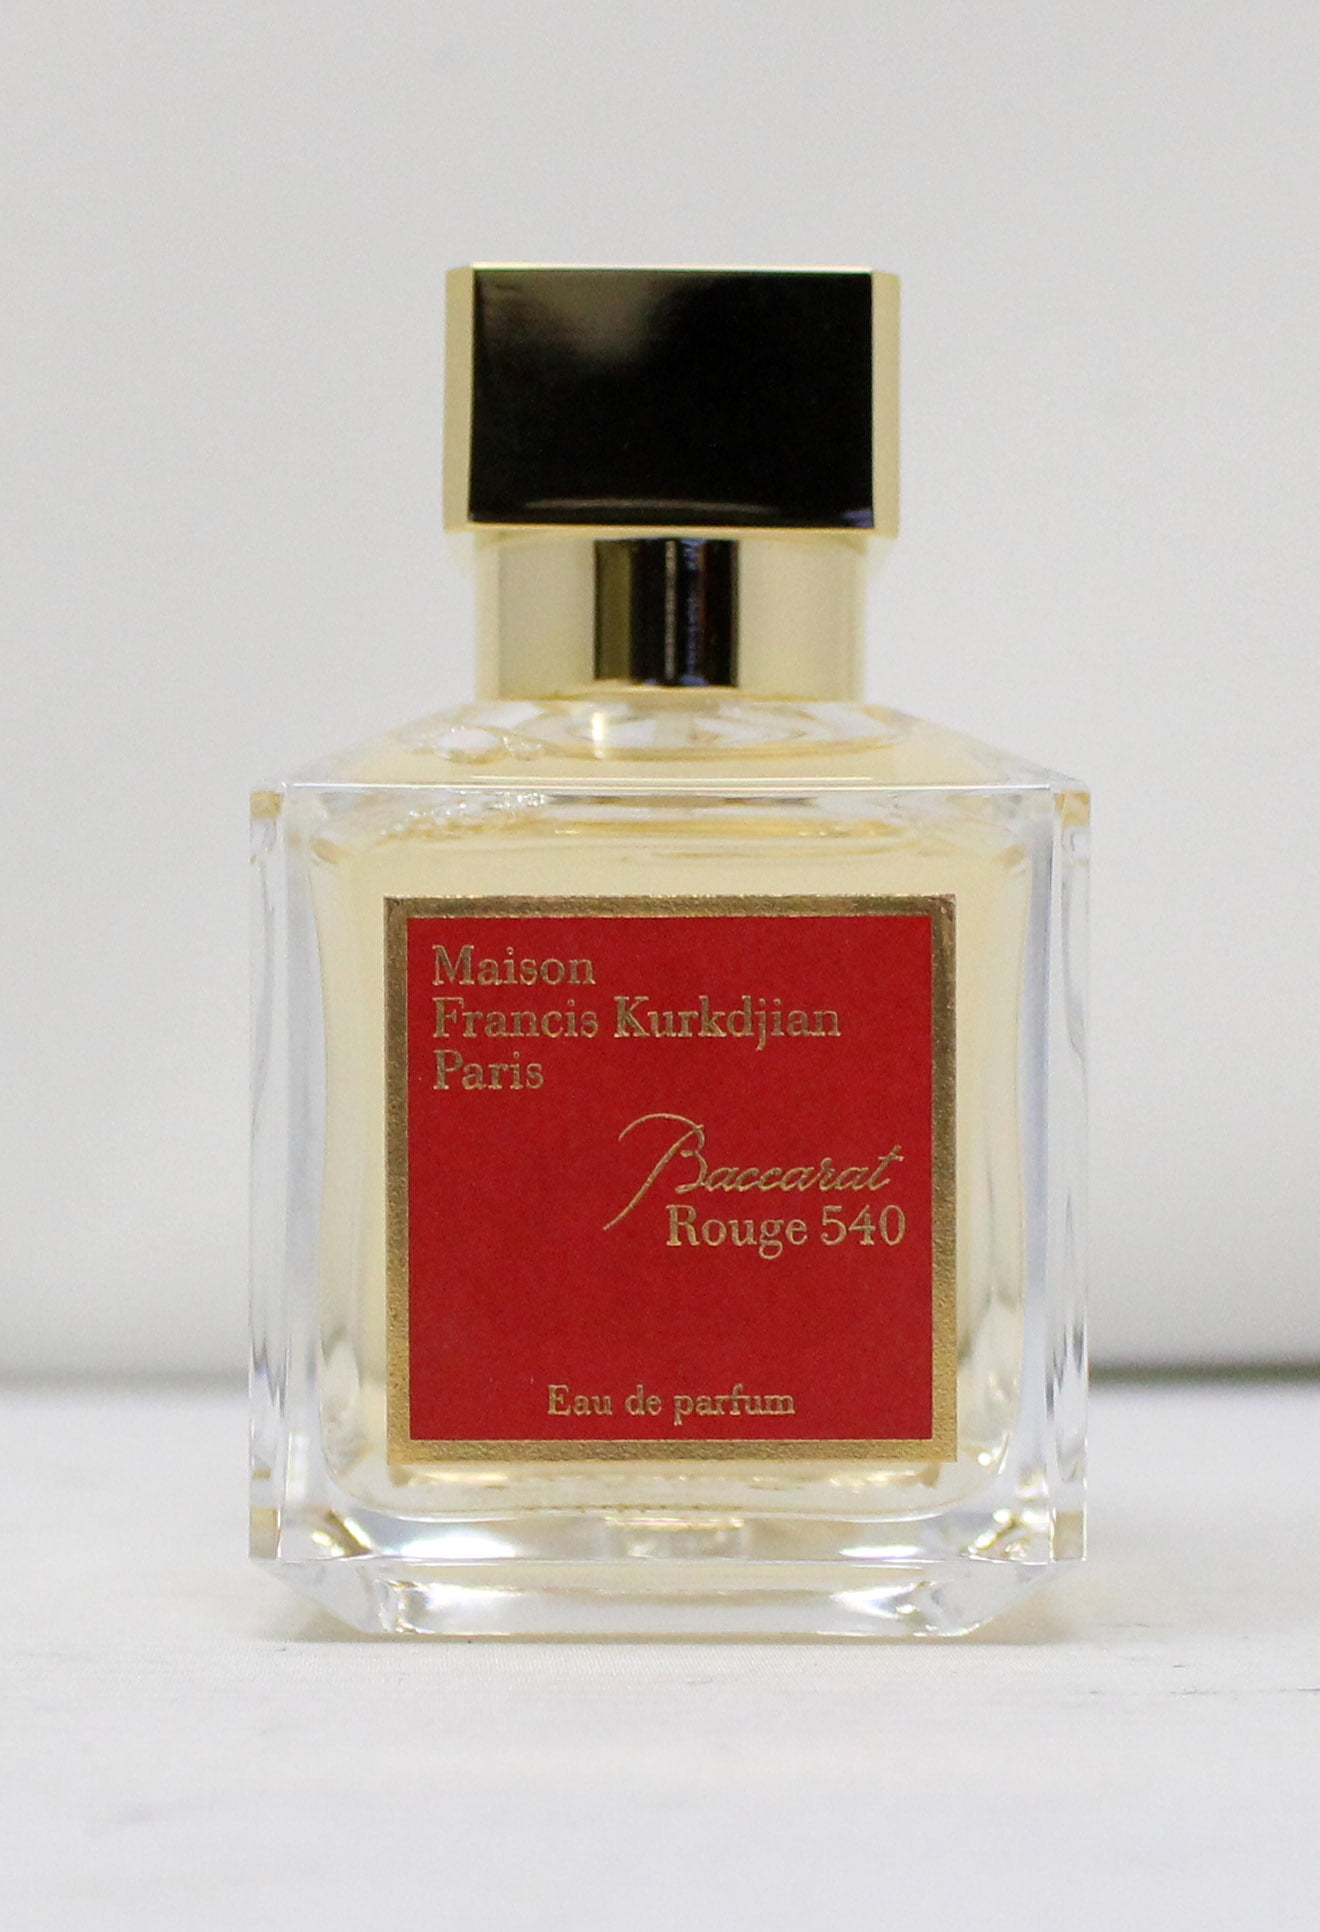 francis kurkdjian perfumer